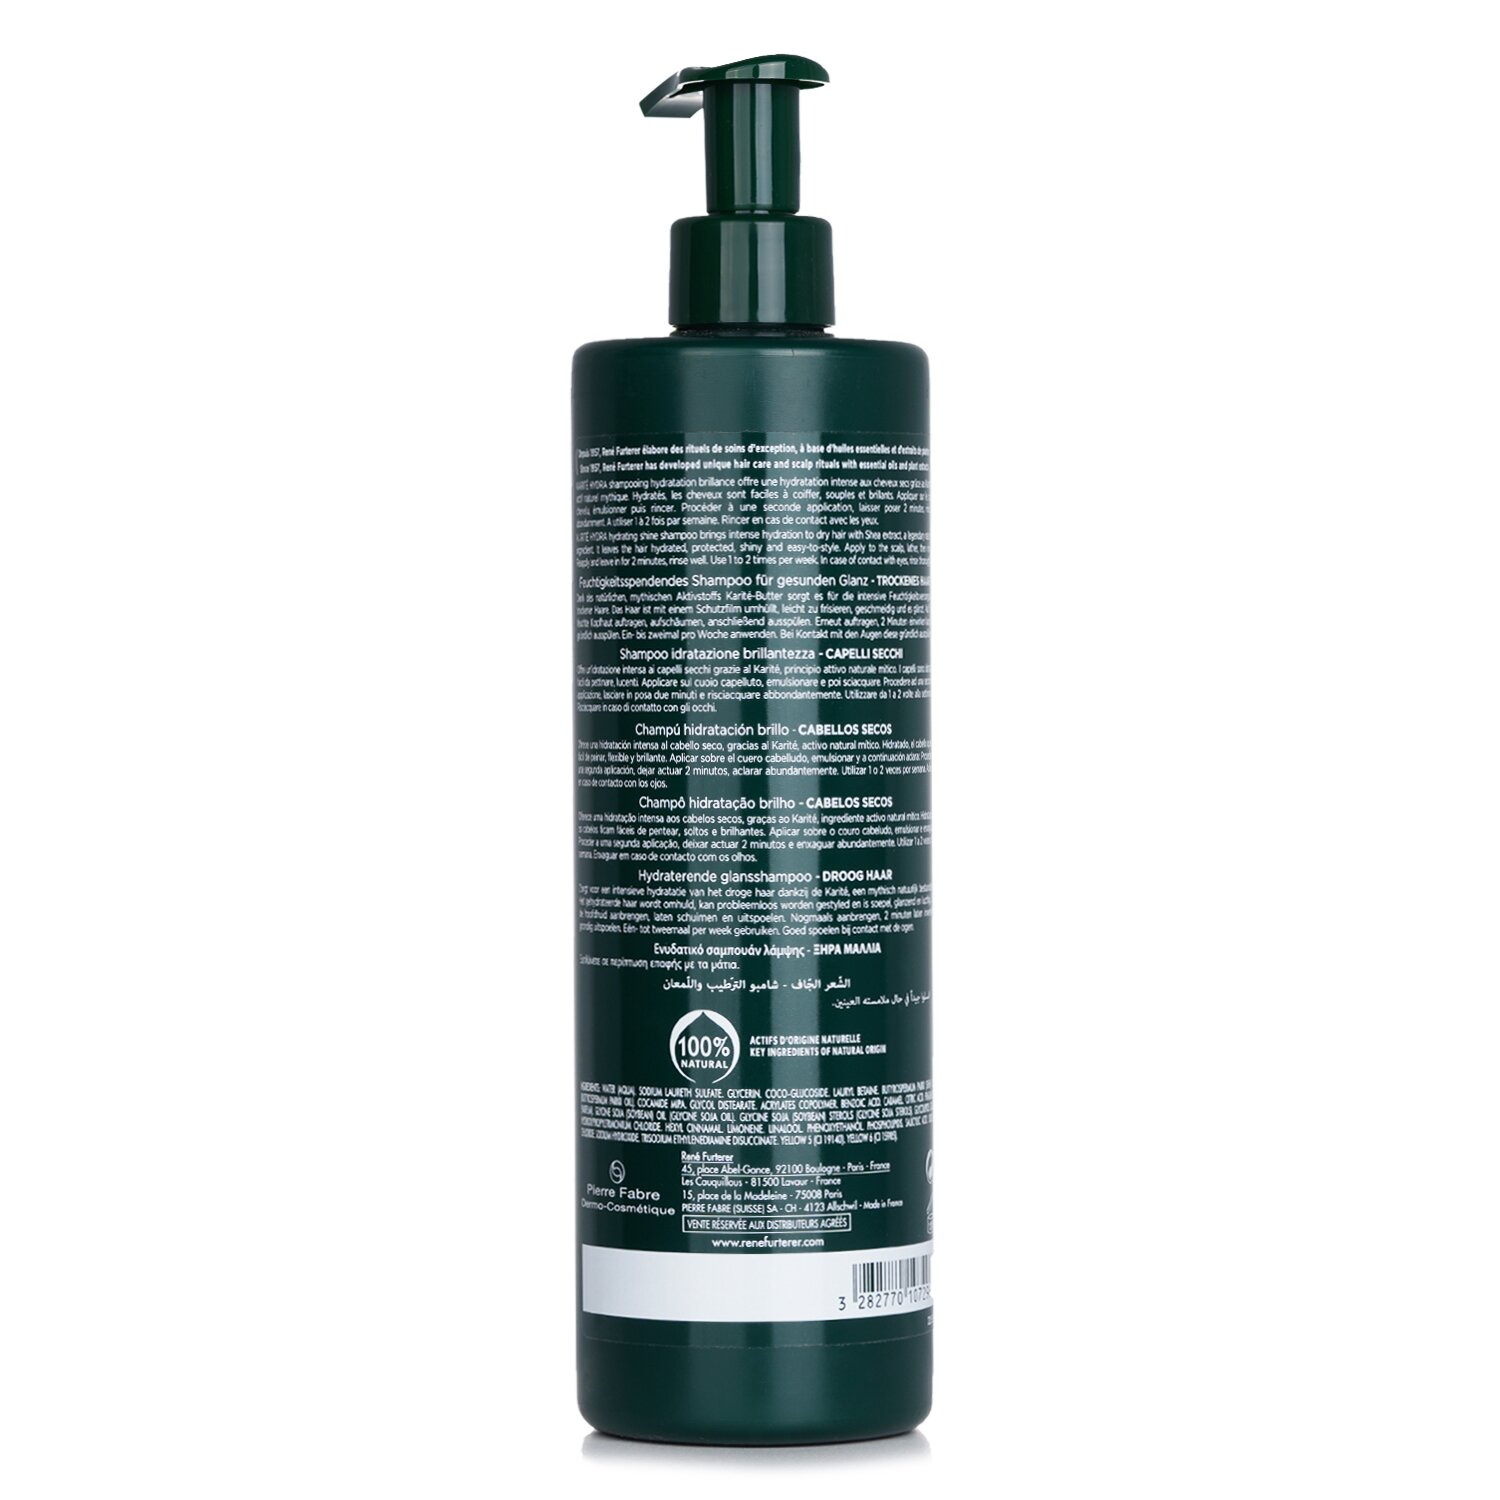 Rene Furterer Karite Hydra Hydrating Shine Shampoo (Dry Hair) 600ml/20.2oz